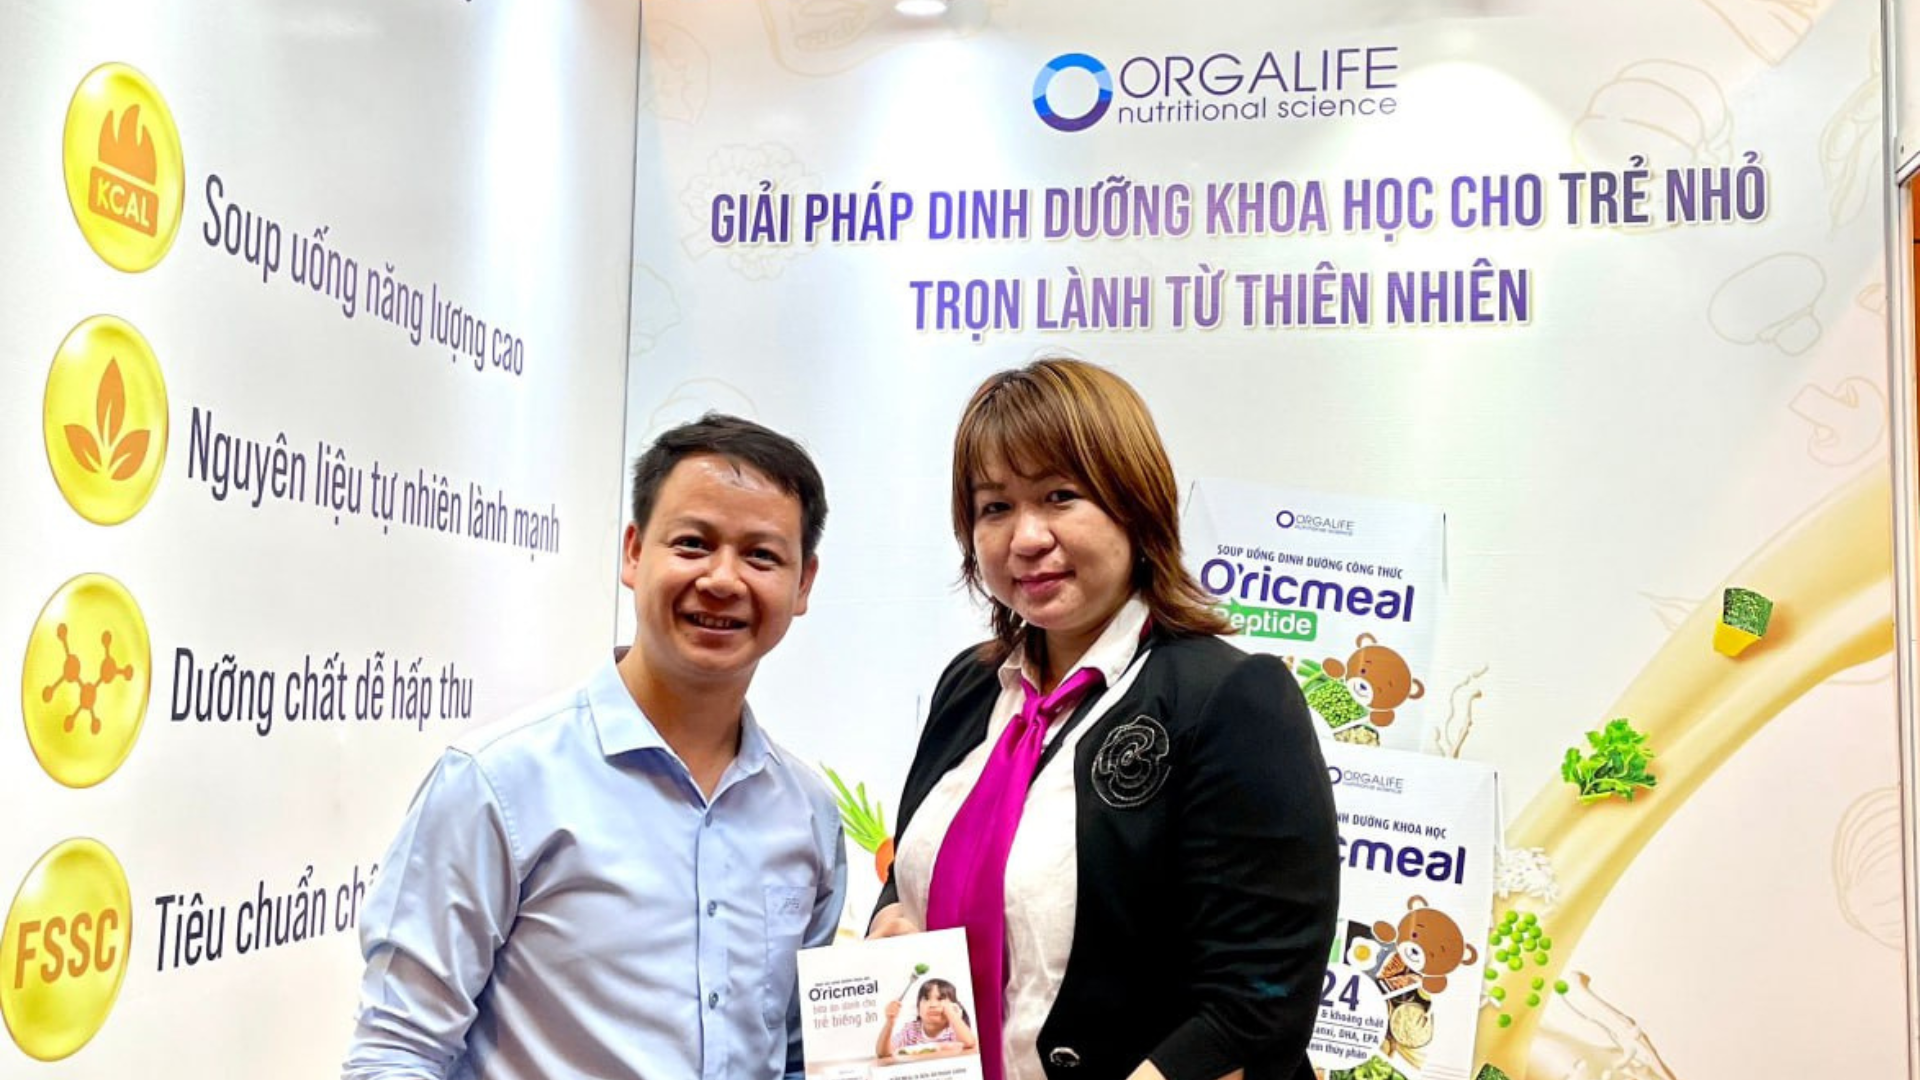 Soup uống dinh dưỡng khoa học O'ricmeal đồng hành cùng Bệnh viện Nhi Đồng 1 trong Hội nghị khoa học Nhi khoa năm 2023